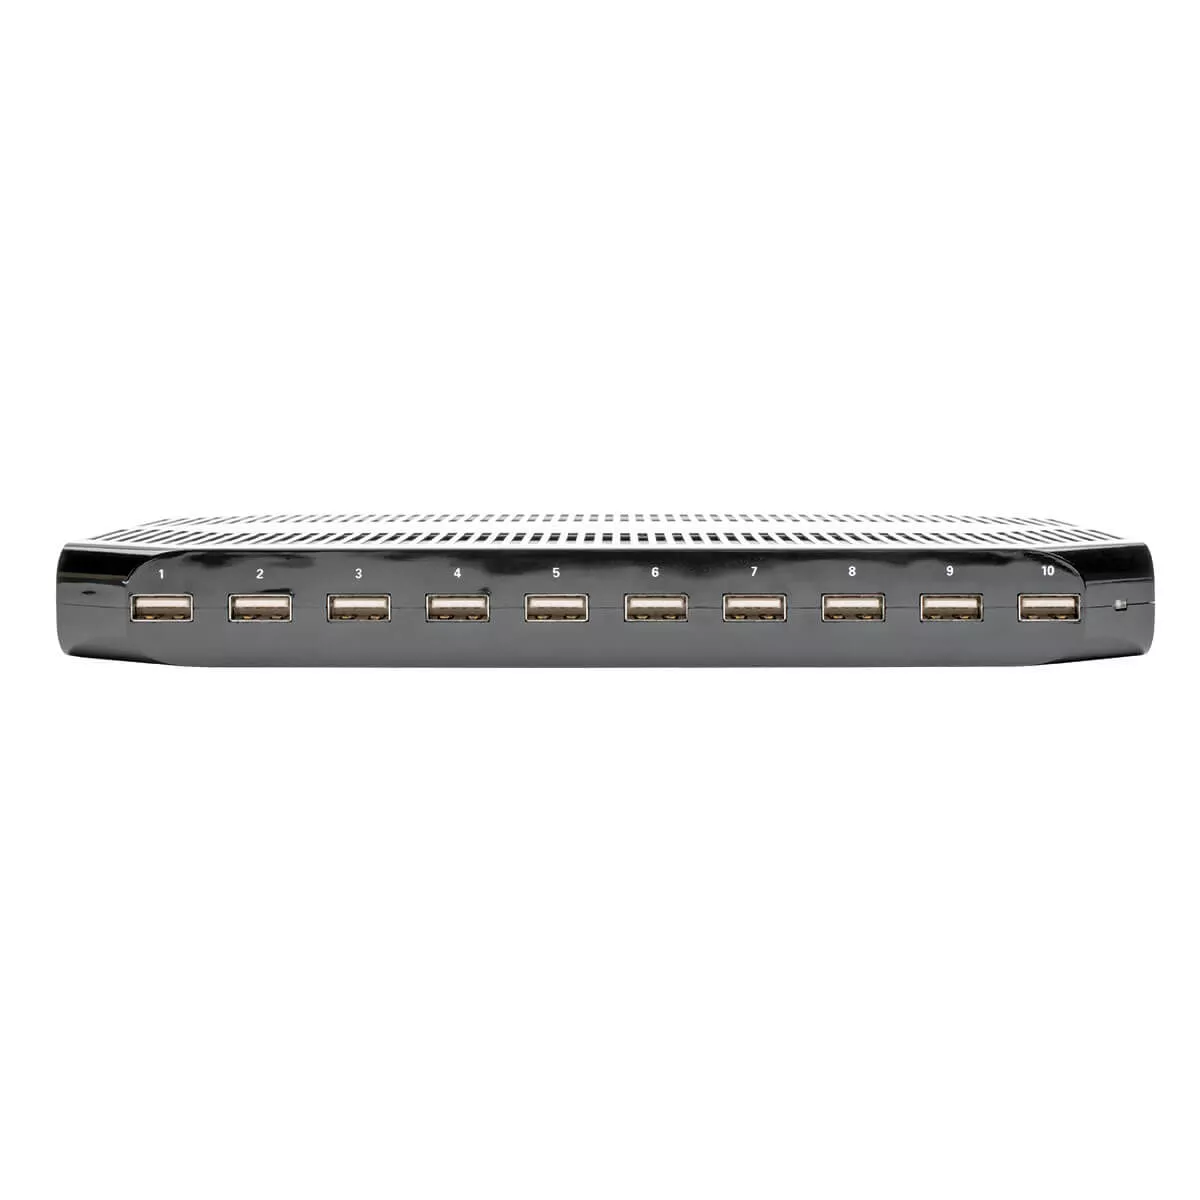 Vente EATON TRIPPLITE 10Port USB Charging Station with Tripp Lite au meilleur prix - visuel 4